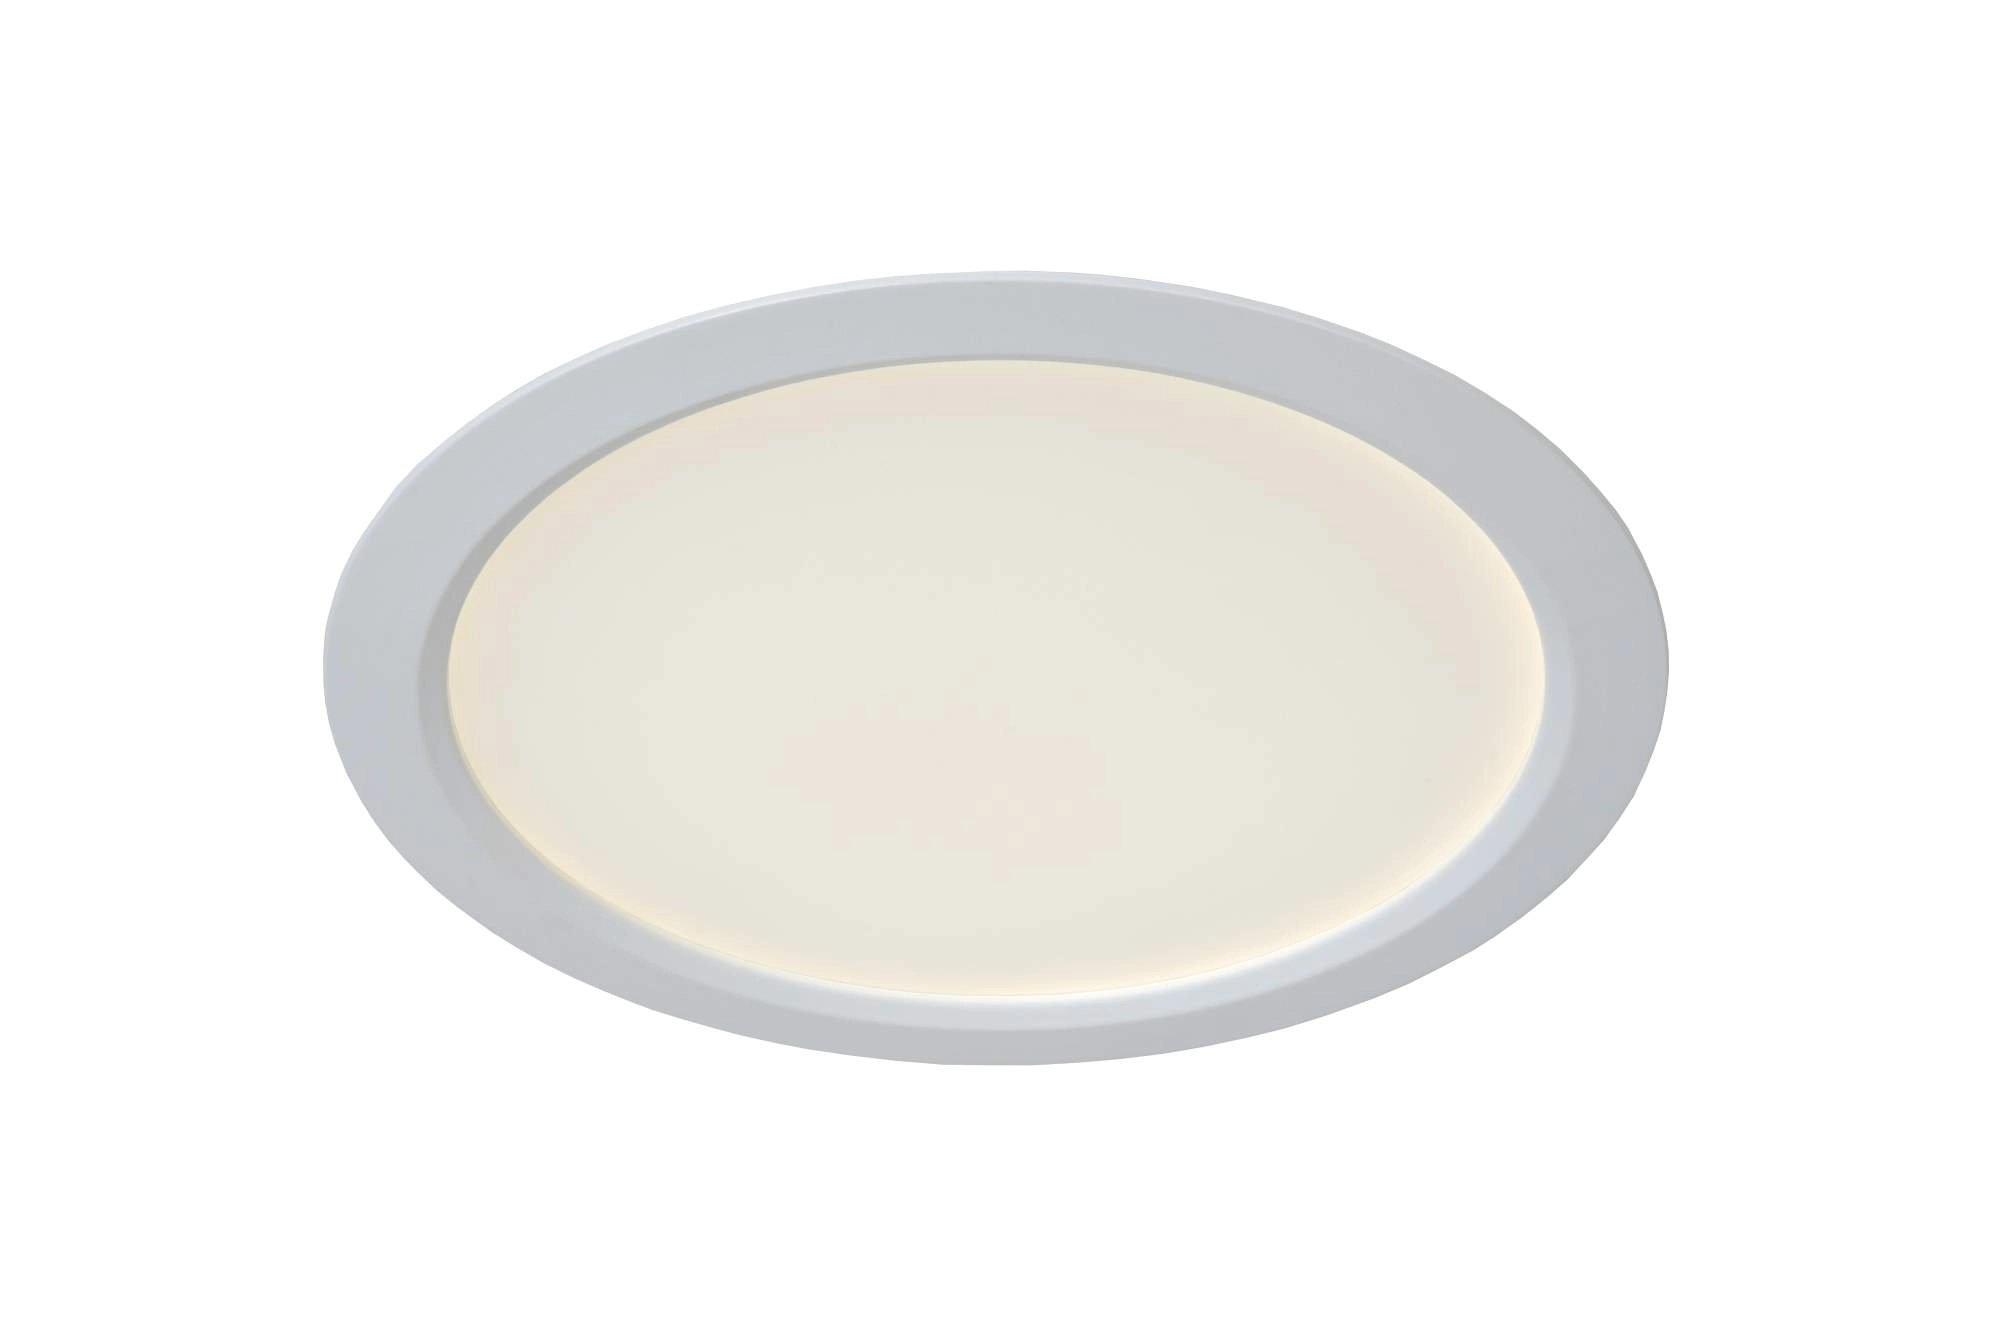 LU 07105/18/31 Lucide TENDO-LED - Flush ceiling light - Ø 22 cm - LED - 1x18W 3000K - White